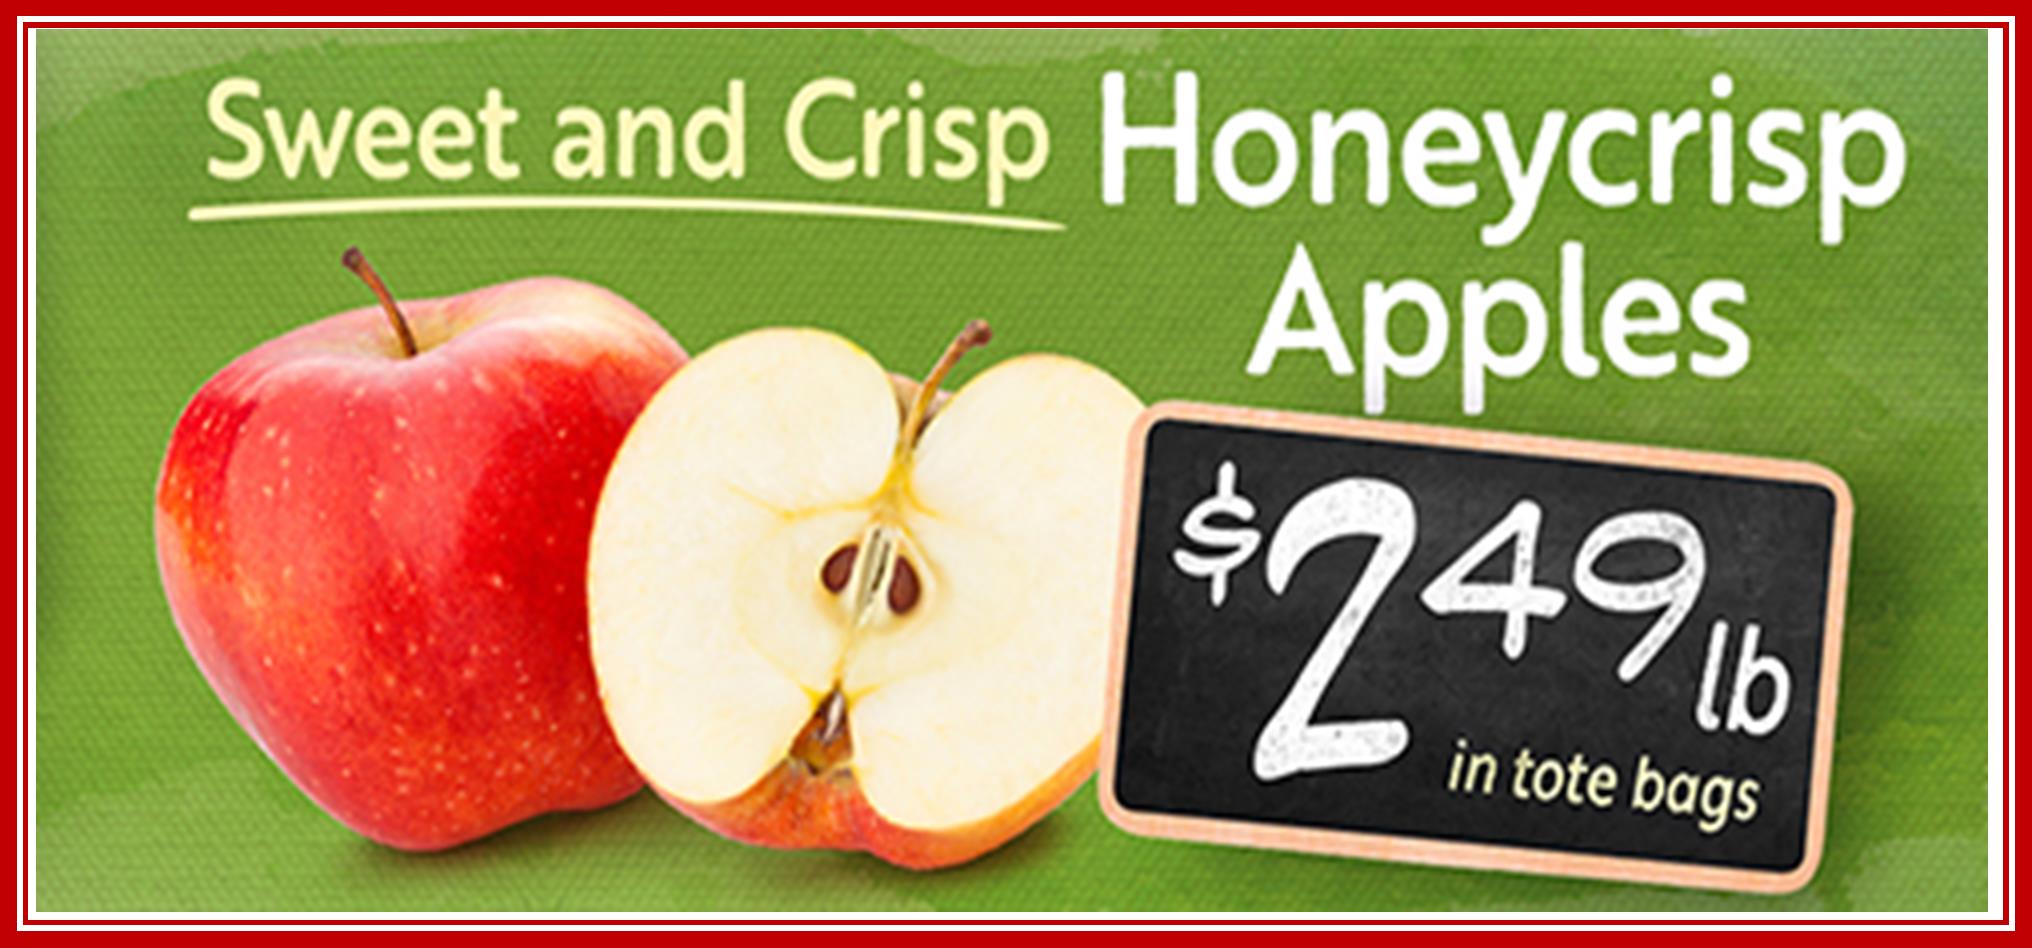 Apples Honeycrisp sweet tote 249.jpg